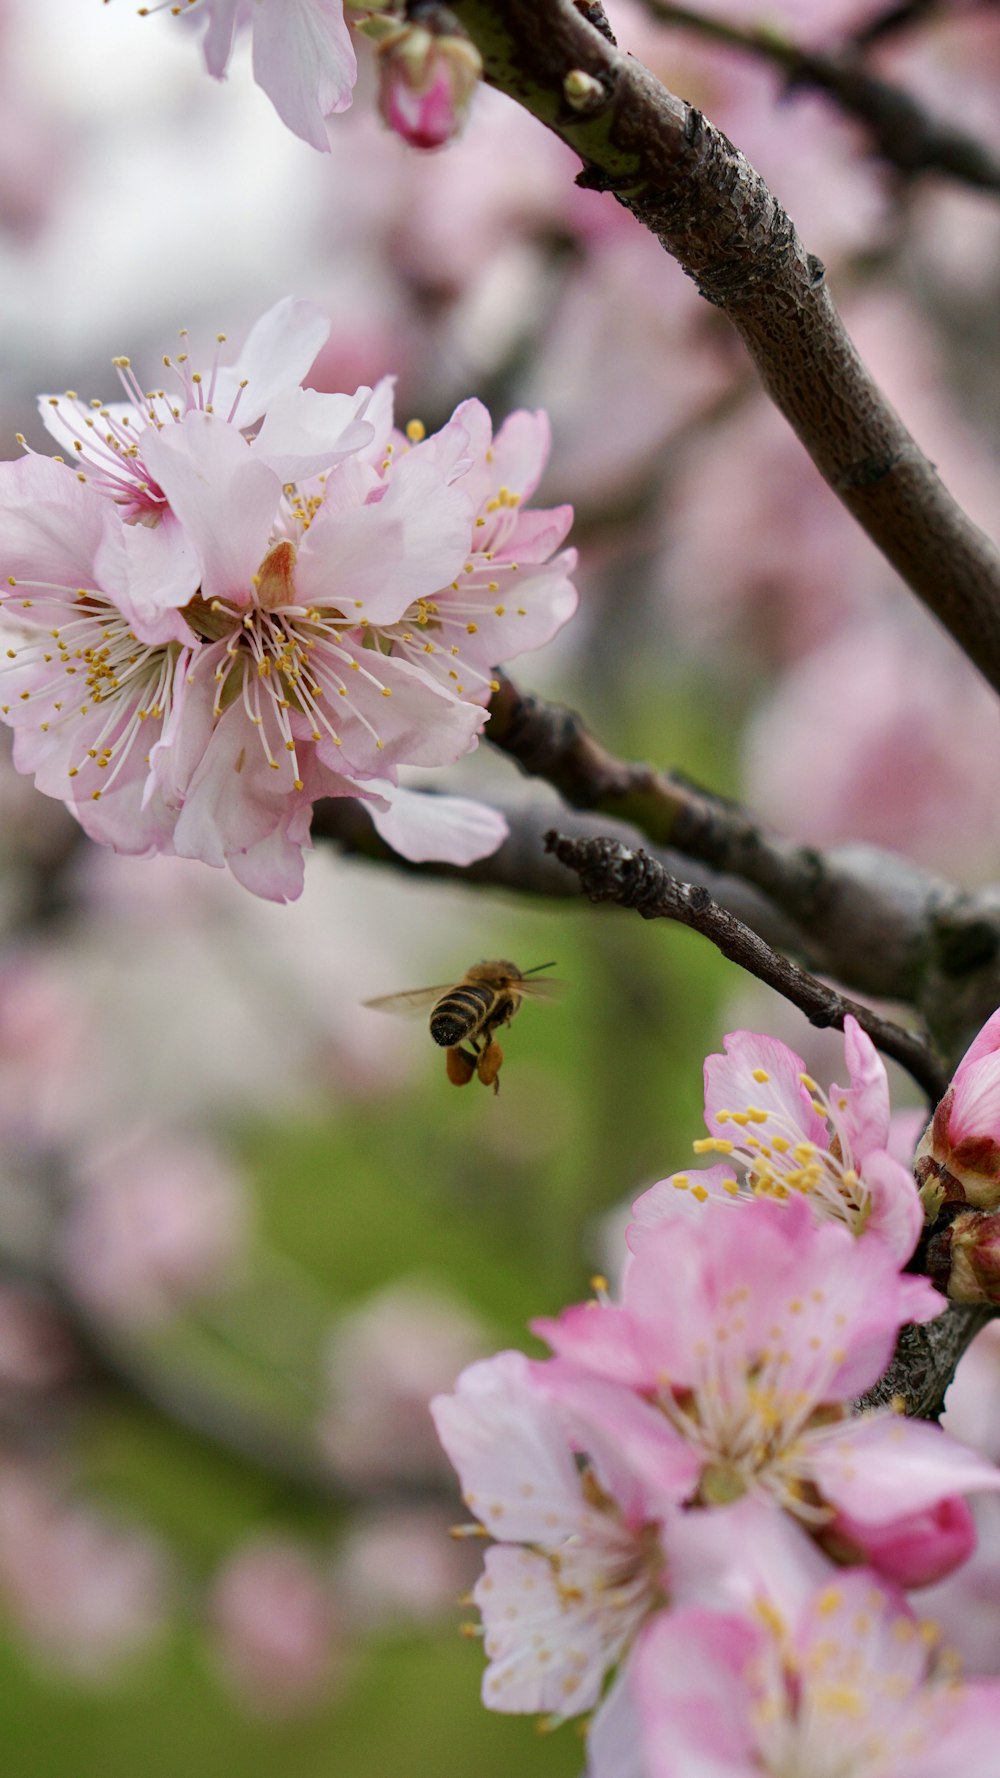 uma abelha voando em direção a uma flor rosa em uma árvore